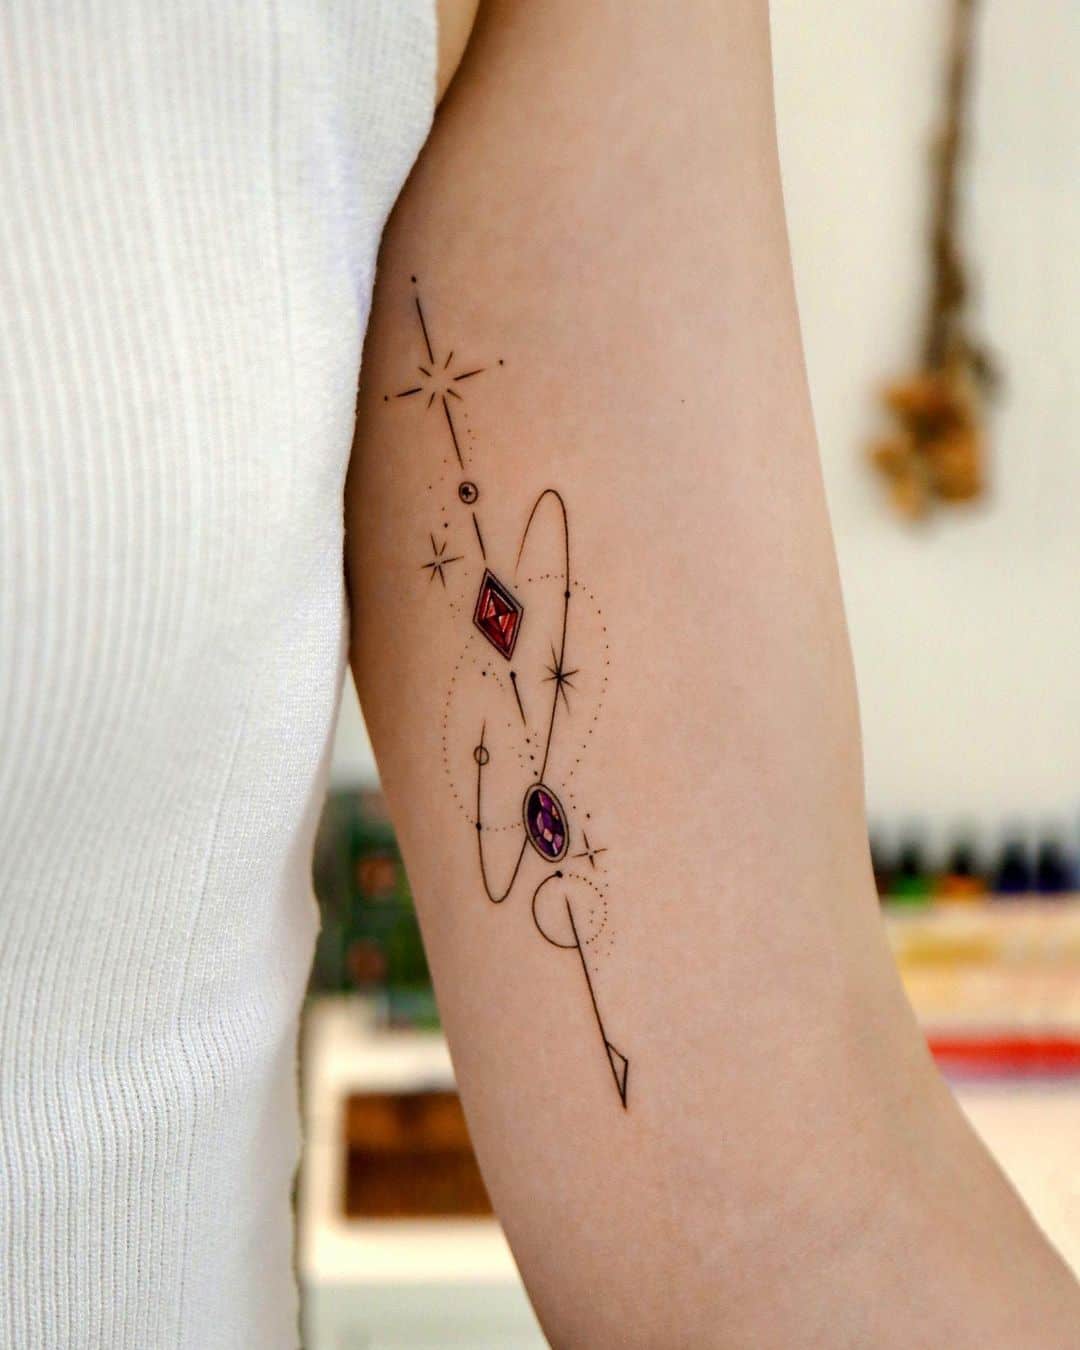 Geometric tattoo design by tattooist giho